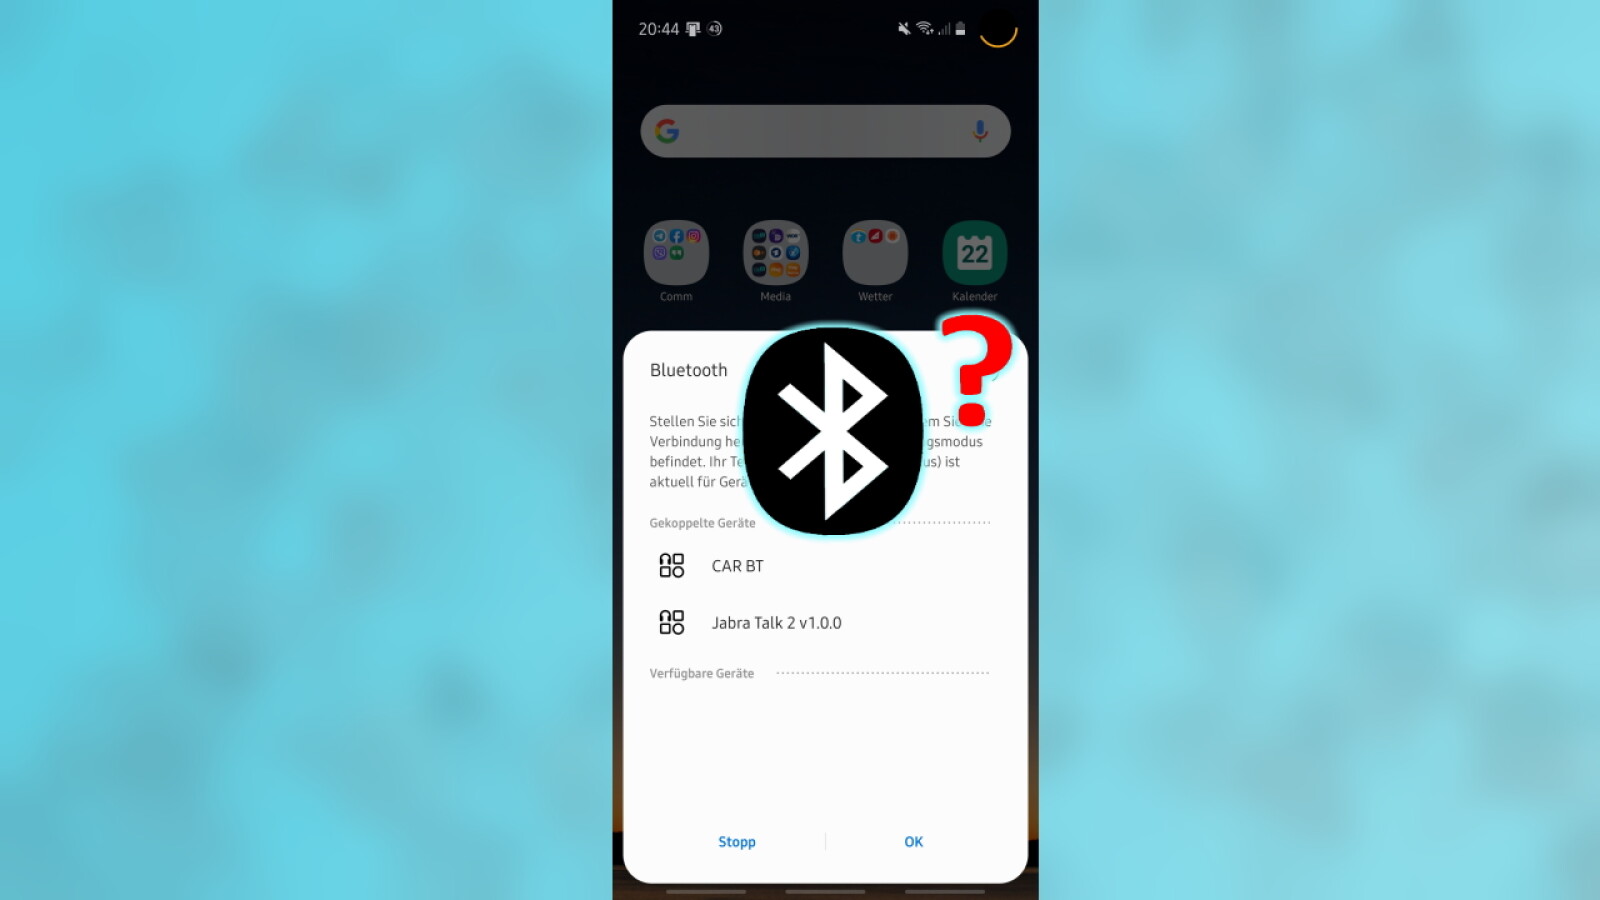 Android So Behebt Ihr Probleme Mit Bluetooth Netzwelt